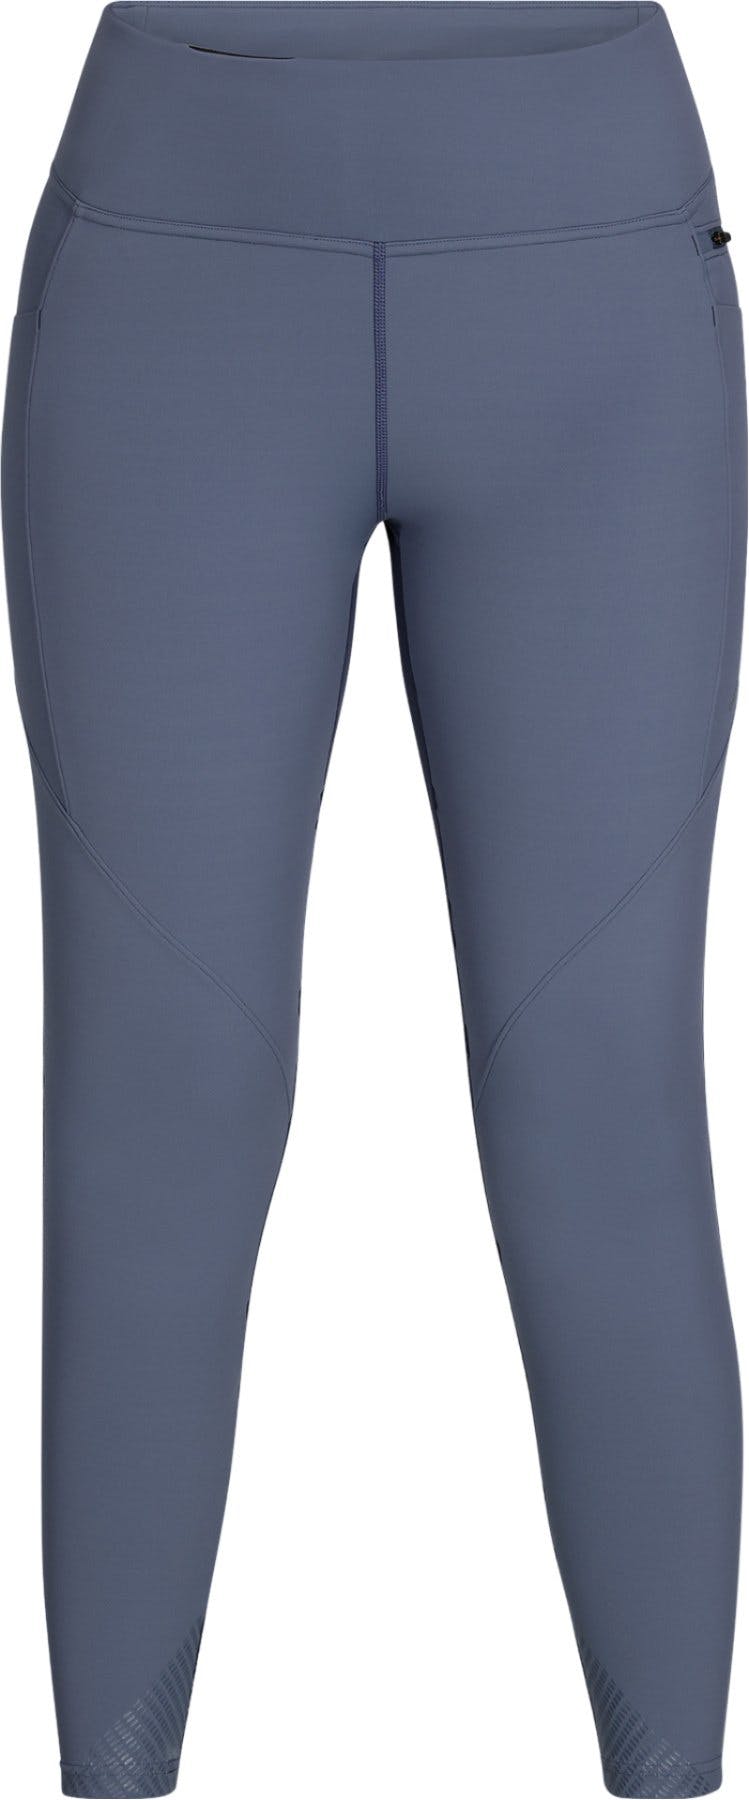 Product image for Ferrosi Hybrid Leggings - Women's